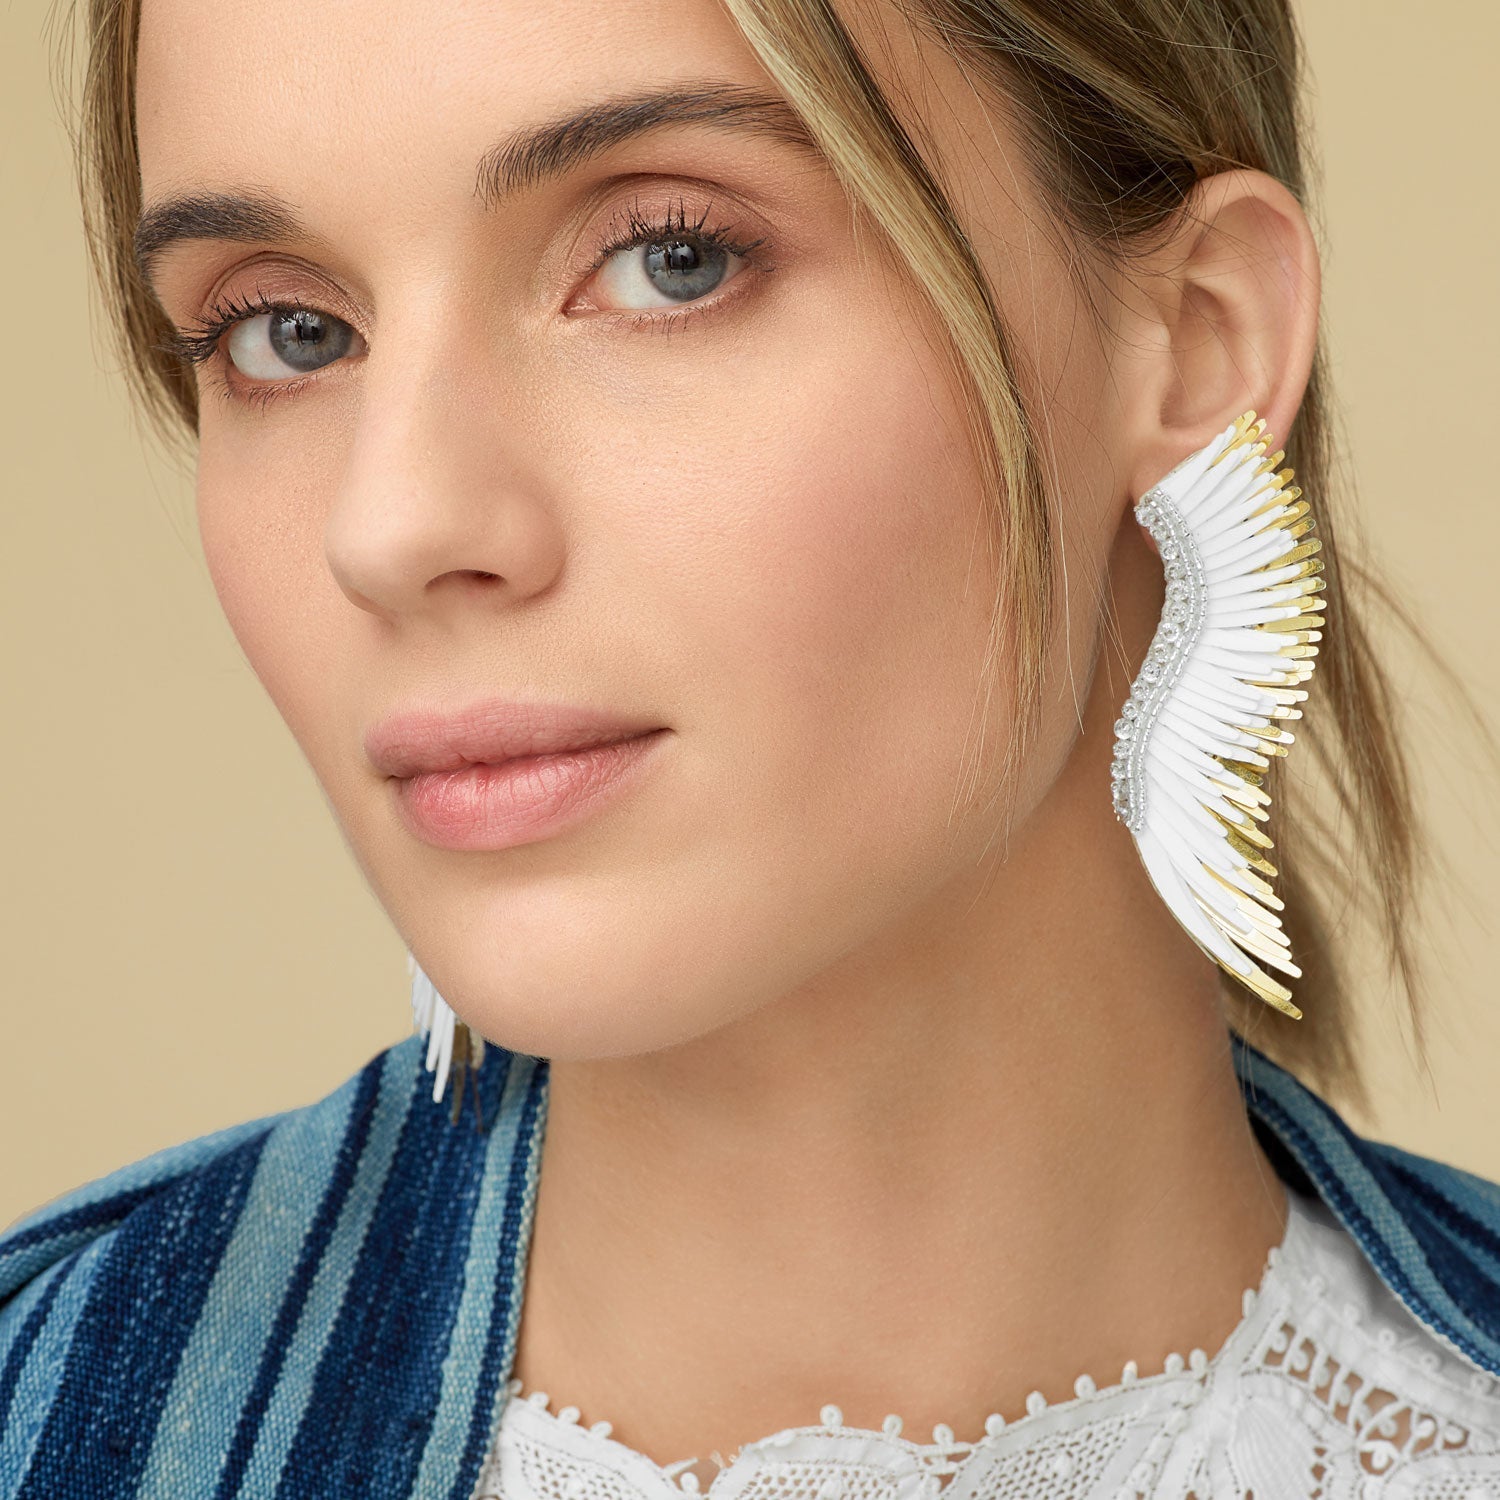 Madeline Earrings White Gold by Mignonne Gavigan